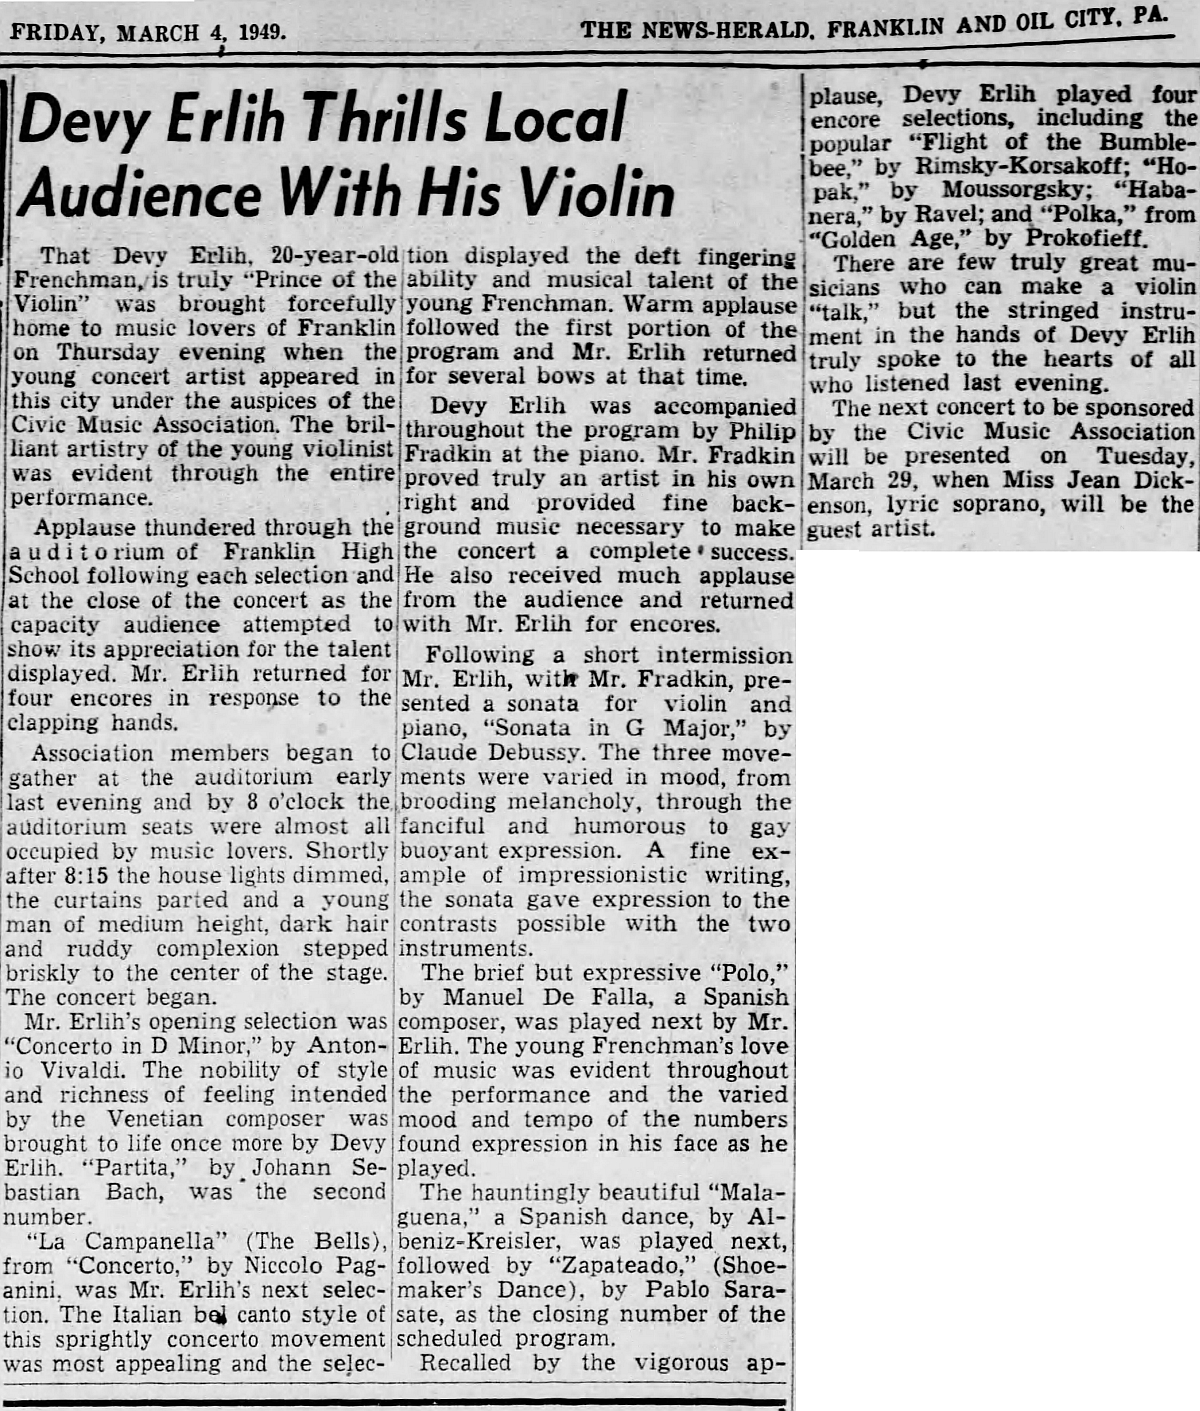 Extrait du The News Herald du 04 mars 1949, page 12, clicquer pour une vue agrandie